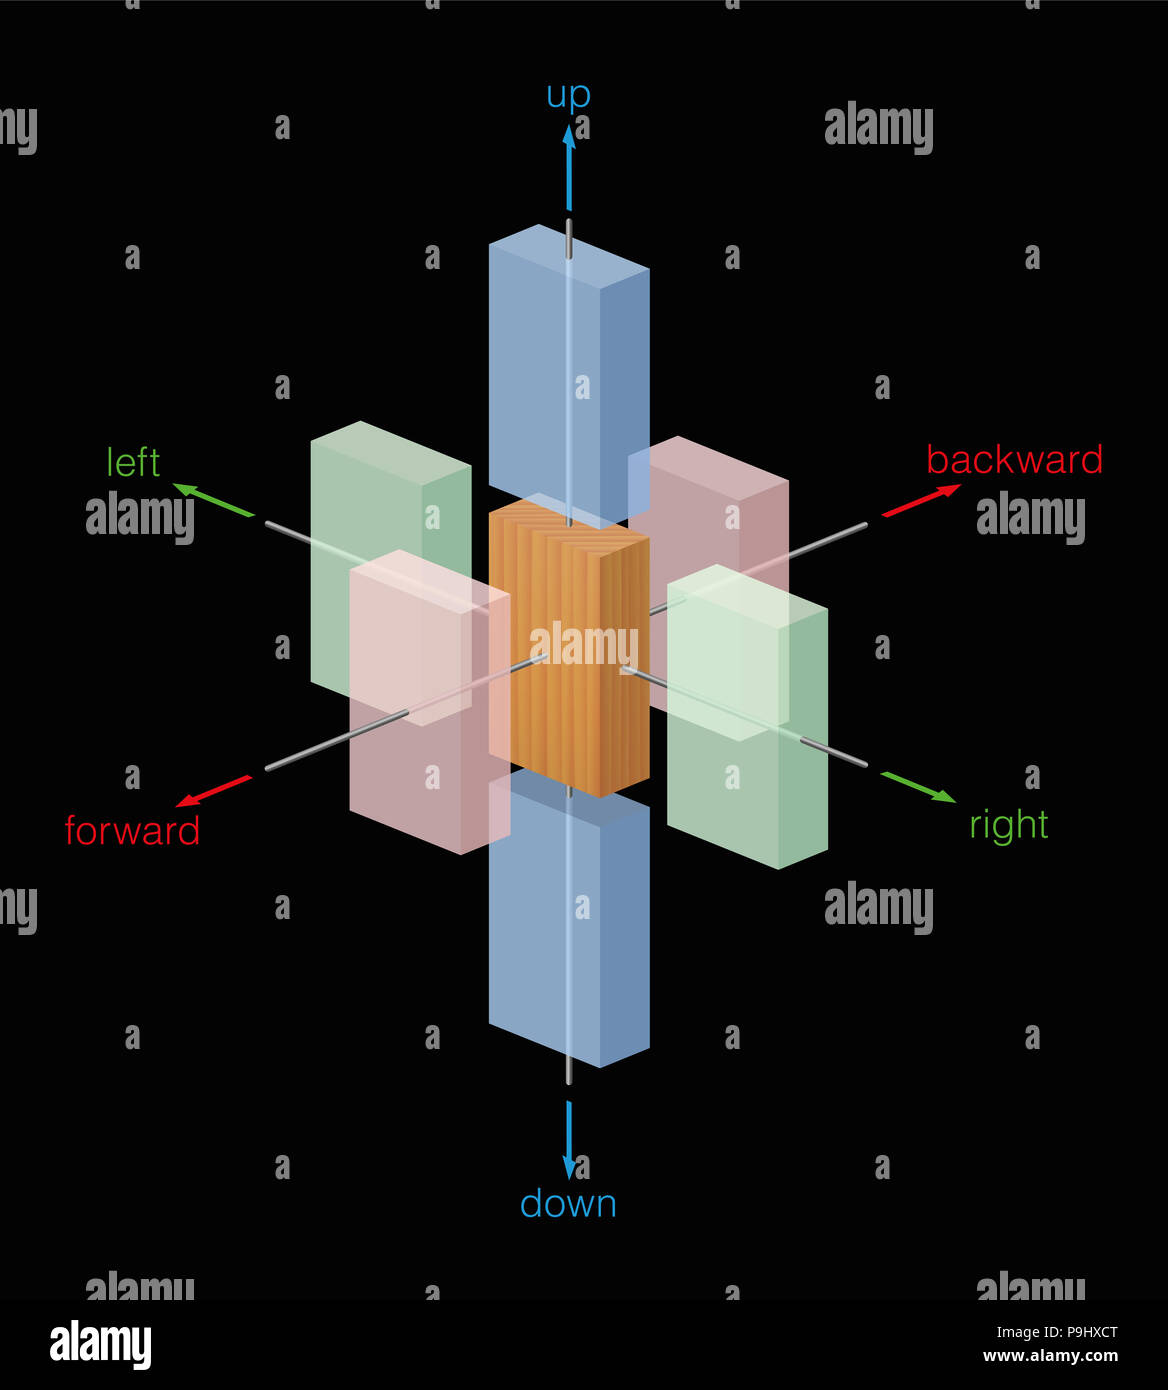 Verschiedene Richtungen der Bewegung von einem hölzernen Körper. Nach links und rechts, oben und unten, vorwärts und rückwärts - Darstellung auf schwarzem Hintergrund Stockfoto